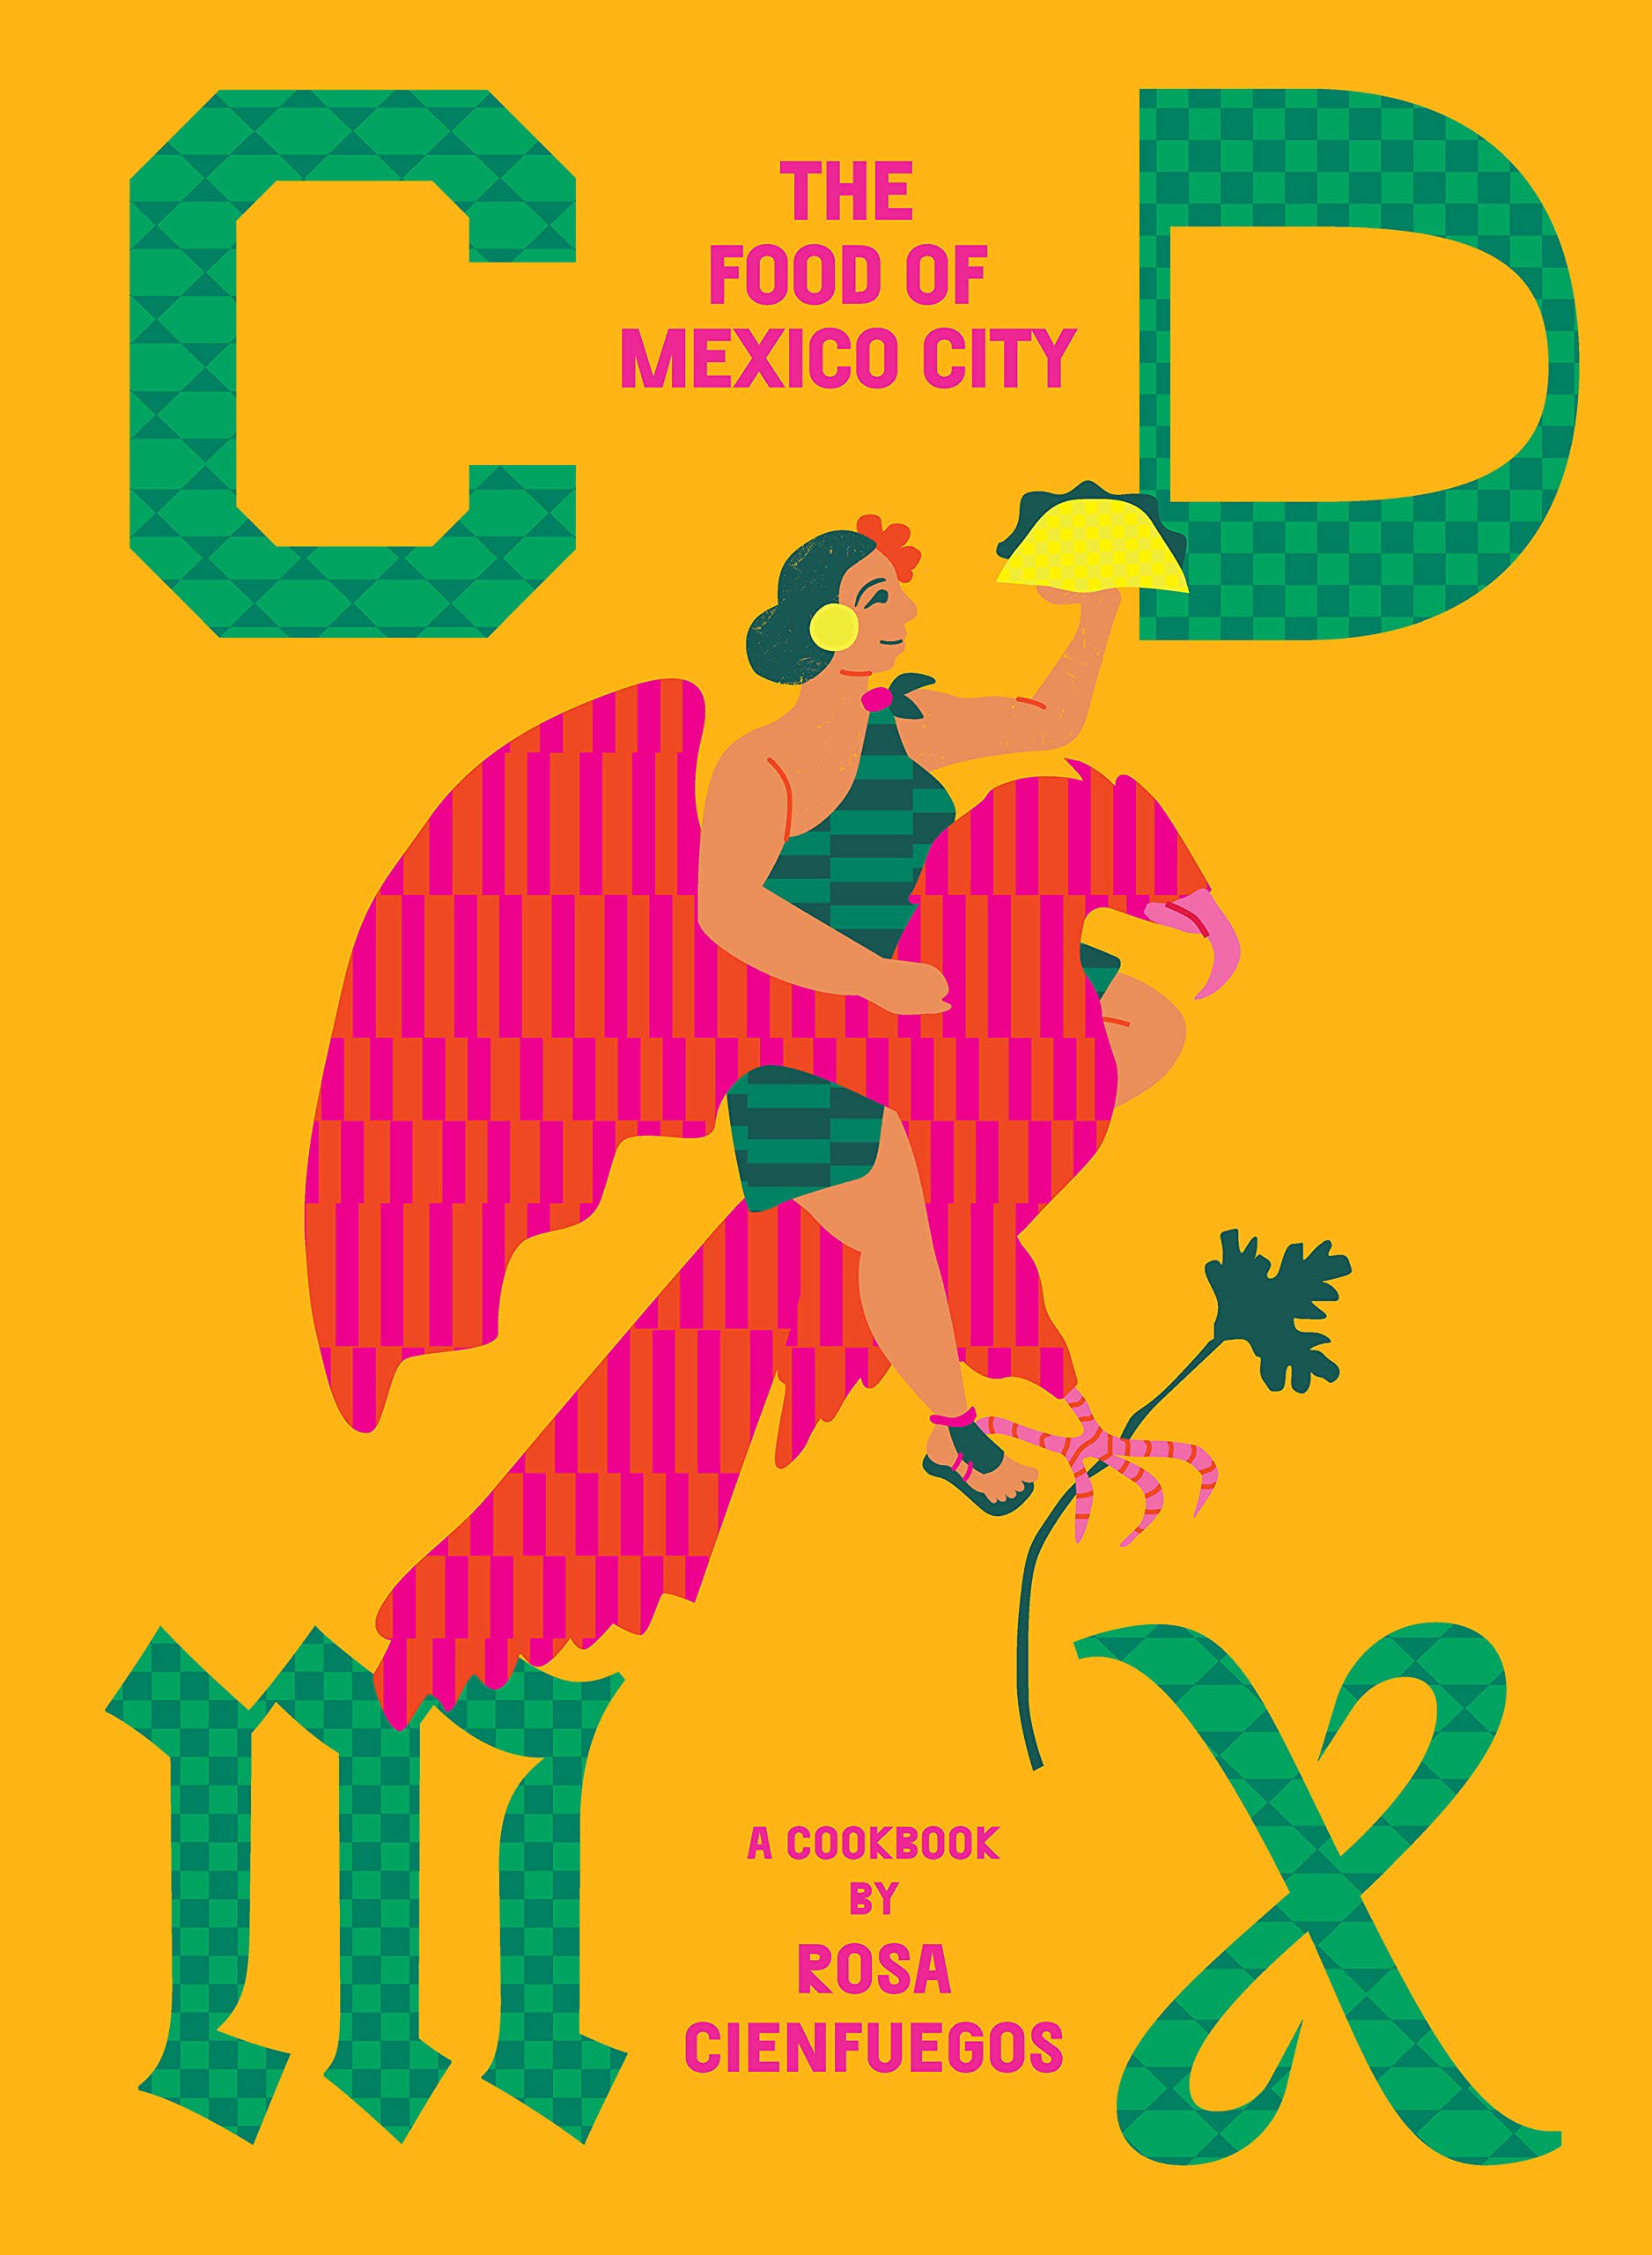 CDMX: The Food of Mexico City (Rosa Cienfuegos)